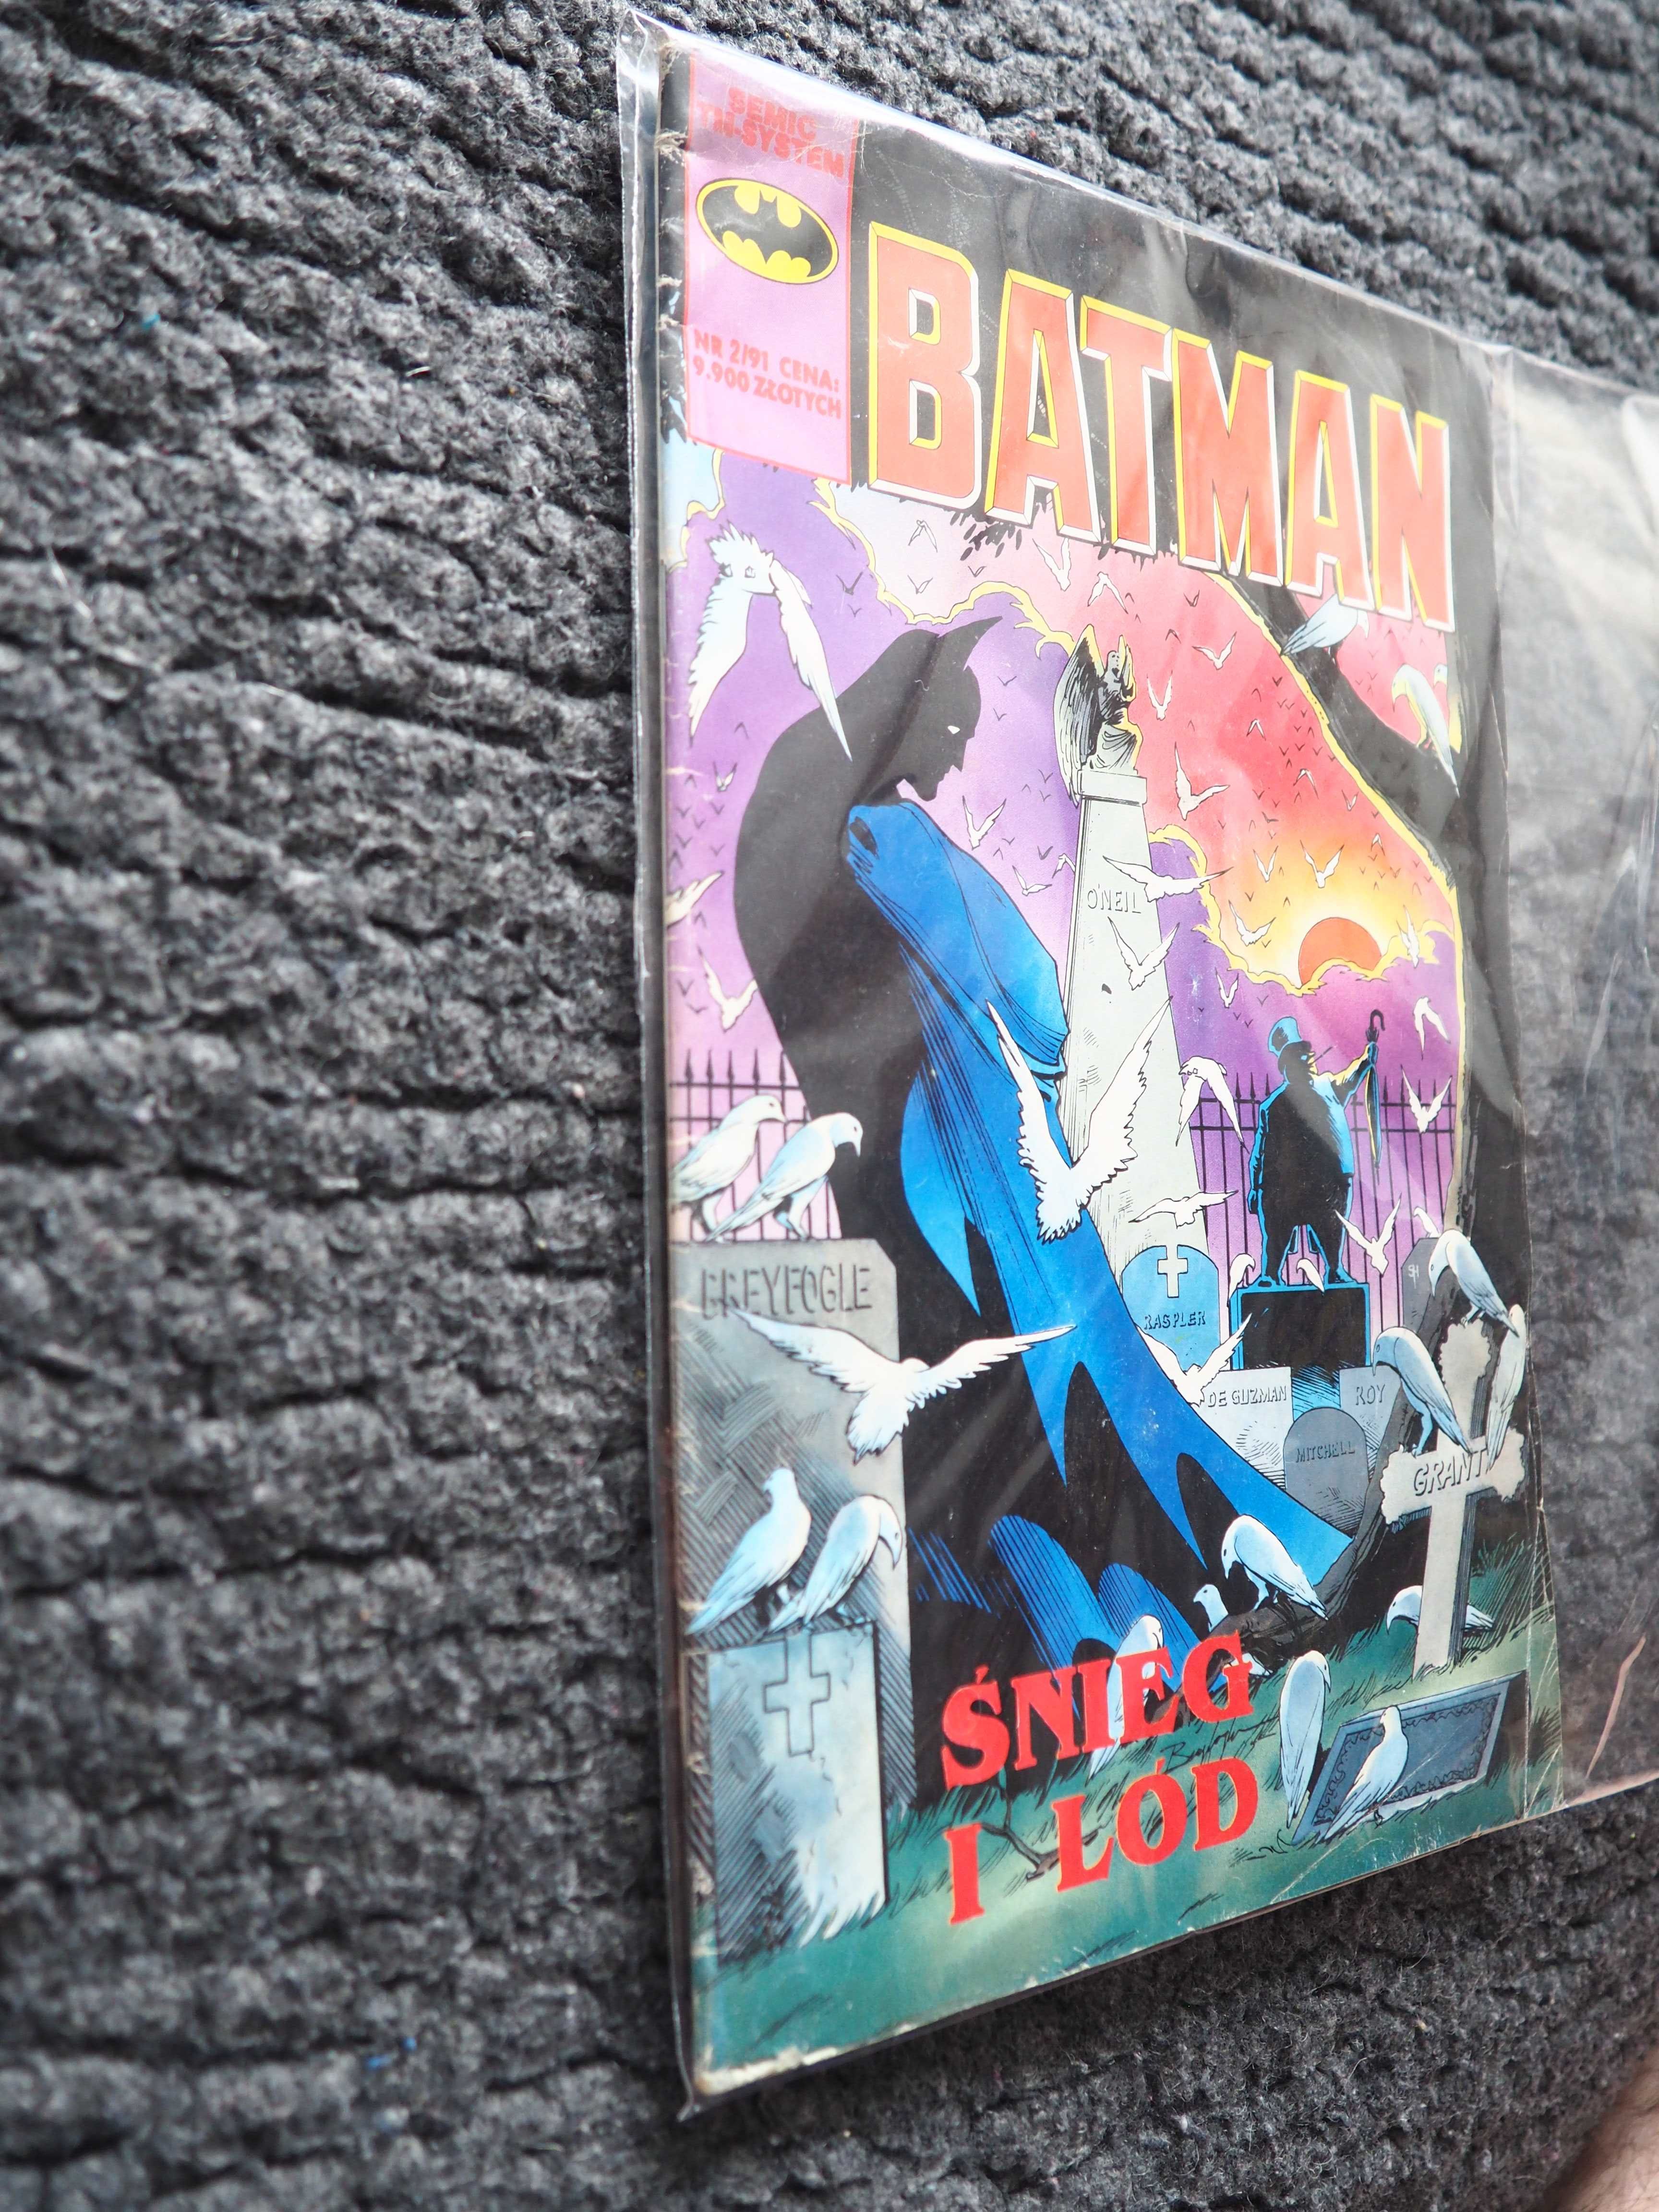 Komiks TM-Semic, Batman, 2 1991, stan db